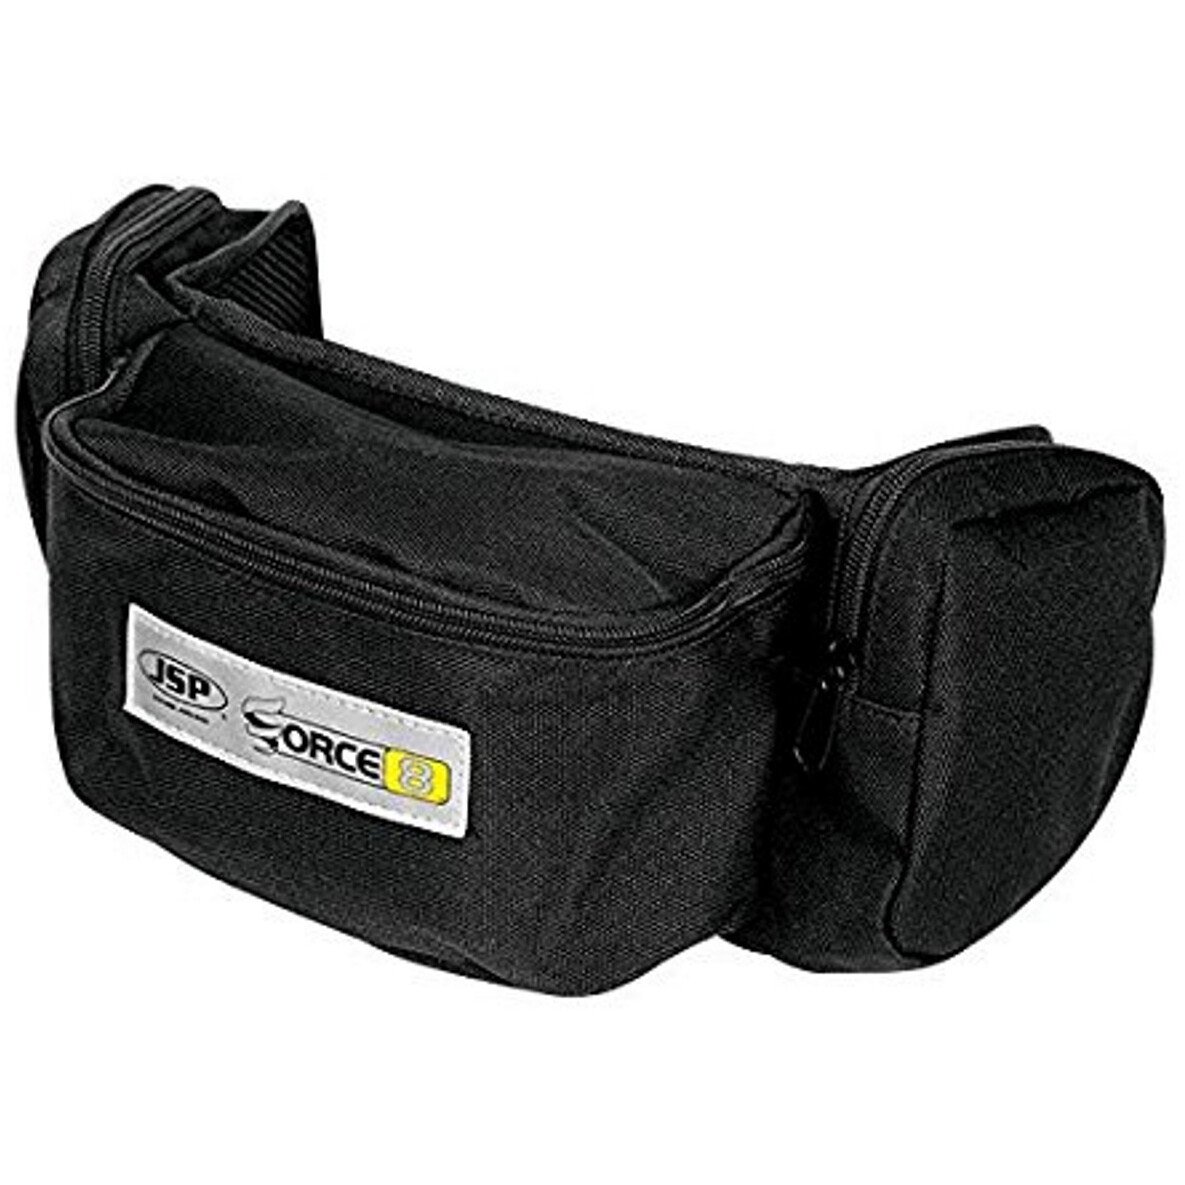 JSP BPT170-011-000 Force 8 Belt Bag (Holds Mask & Filters)